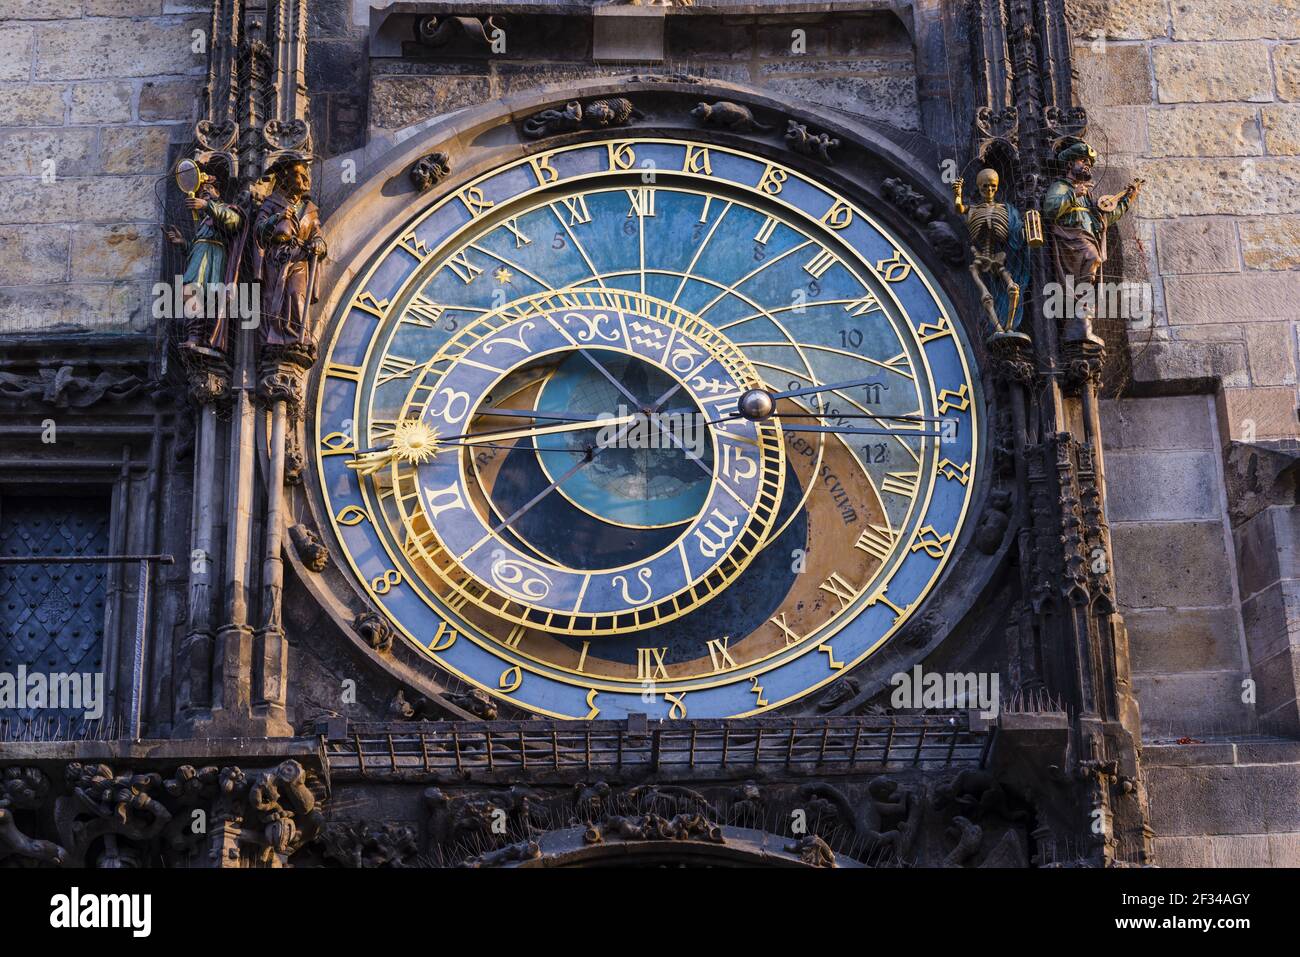 Geografia / viaggio, Czechia, Boemia, orologio astronomico alla torre del municipio, Piazza della Città Vecchia, città vecchia, Praga, Czechia, Libertà di panorama Foto Stock